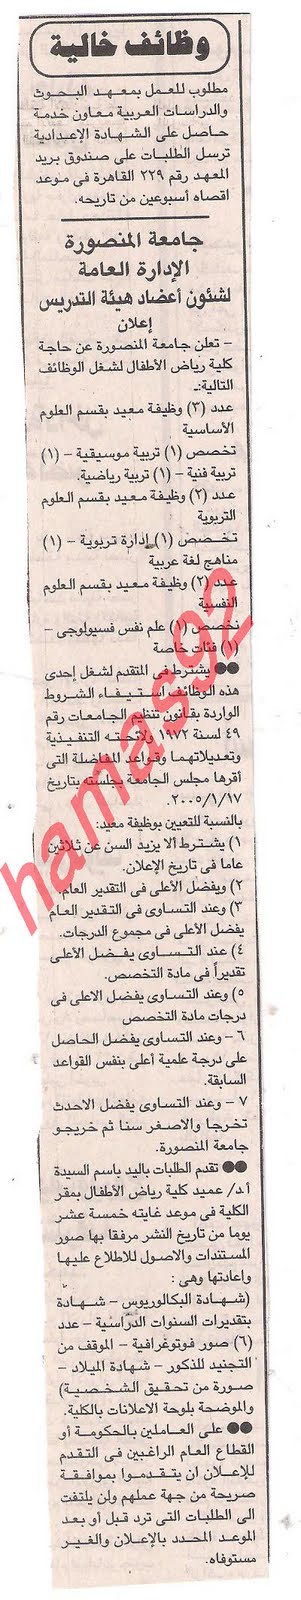 وظائف خاليه من صحيفه الجمهوريه الجمعه 9 \9\2011  Picture+020